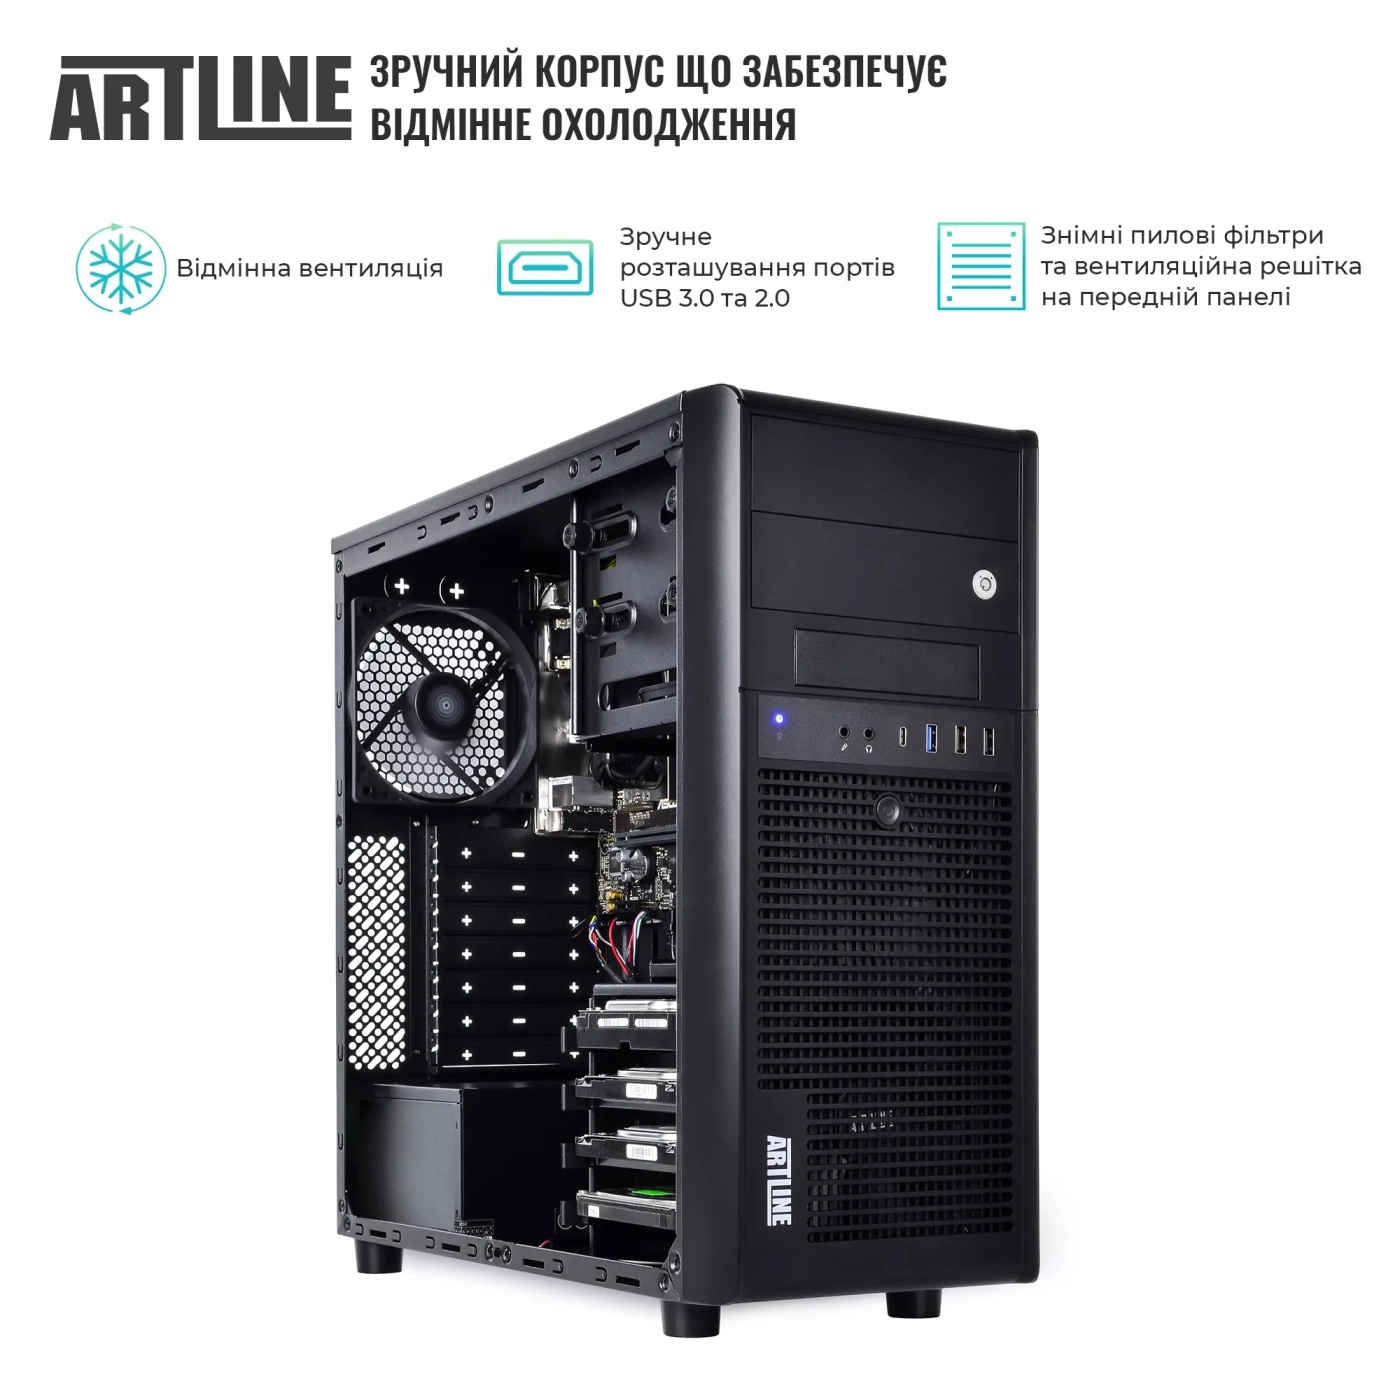 Купить Сервер ARTLINE Business T34 (T34v20) - фото 3